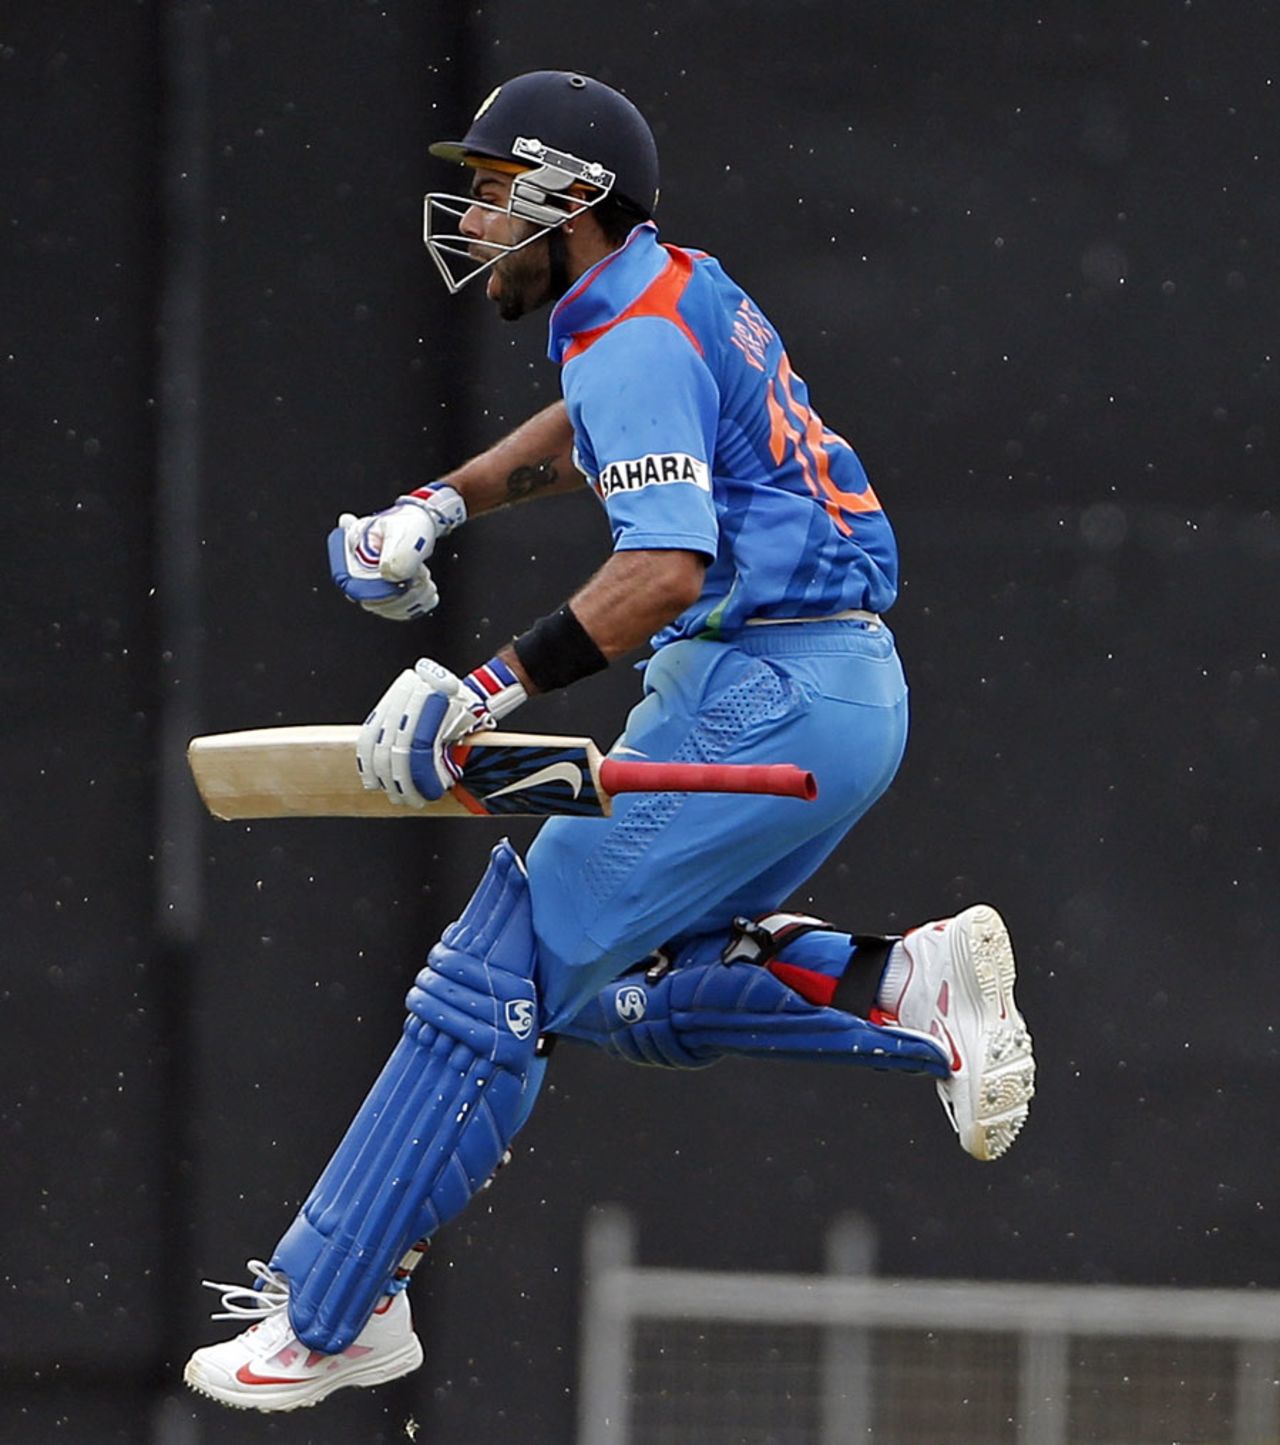 Virat Kohli exults after scoring his 14th ODI hundred, West Indies v India, West Indies tri-series, Port of Spain, July 5, 2013
